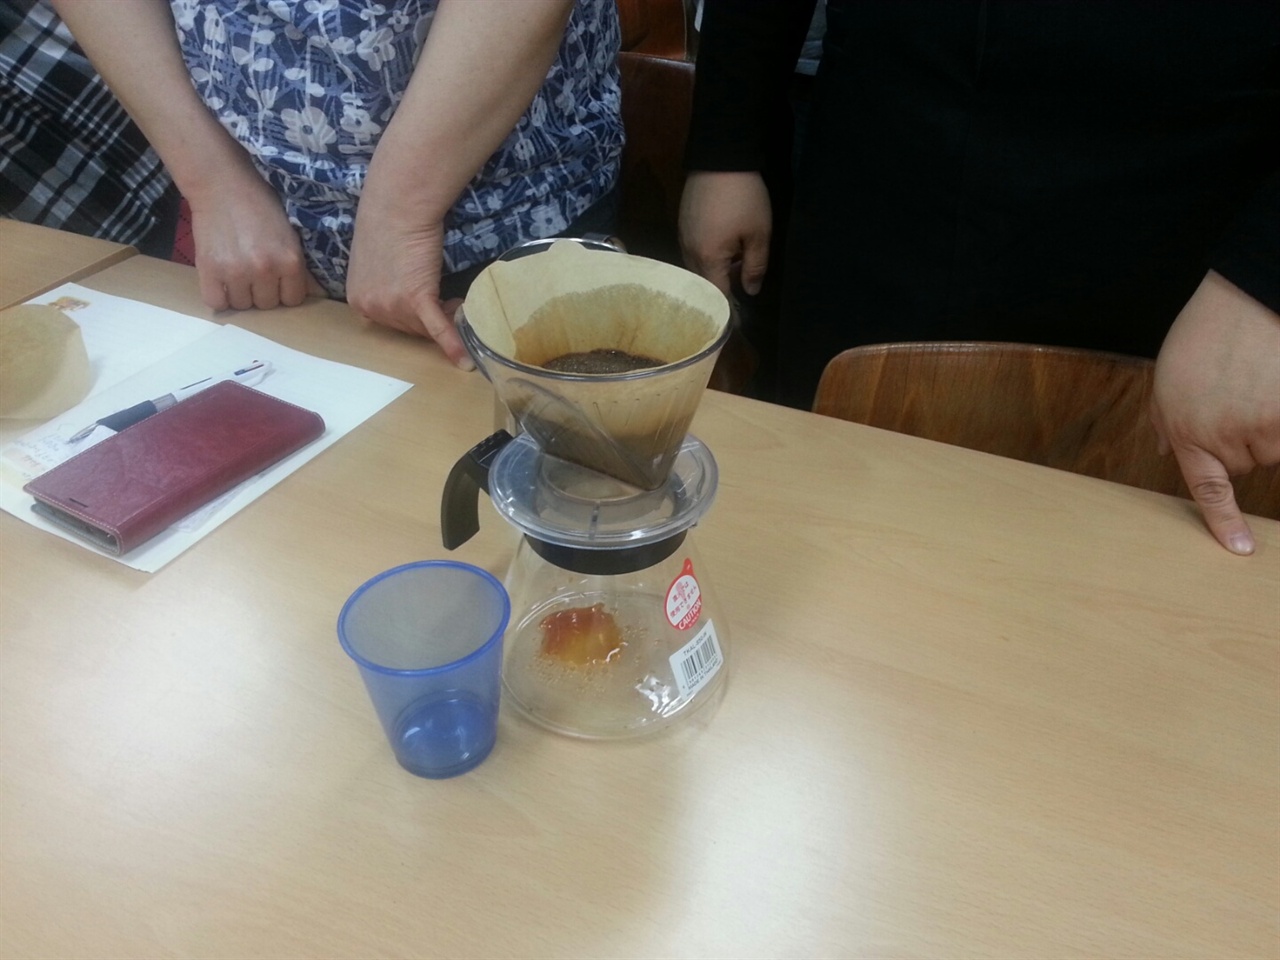 핸드드립으로 커피를 추출하는 과정이다.